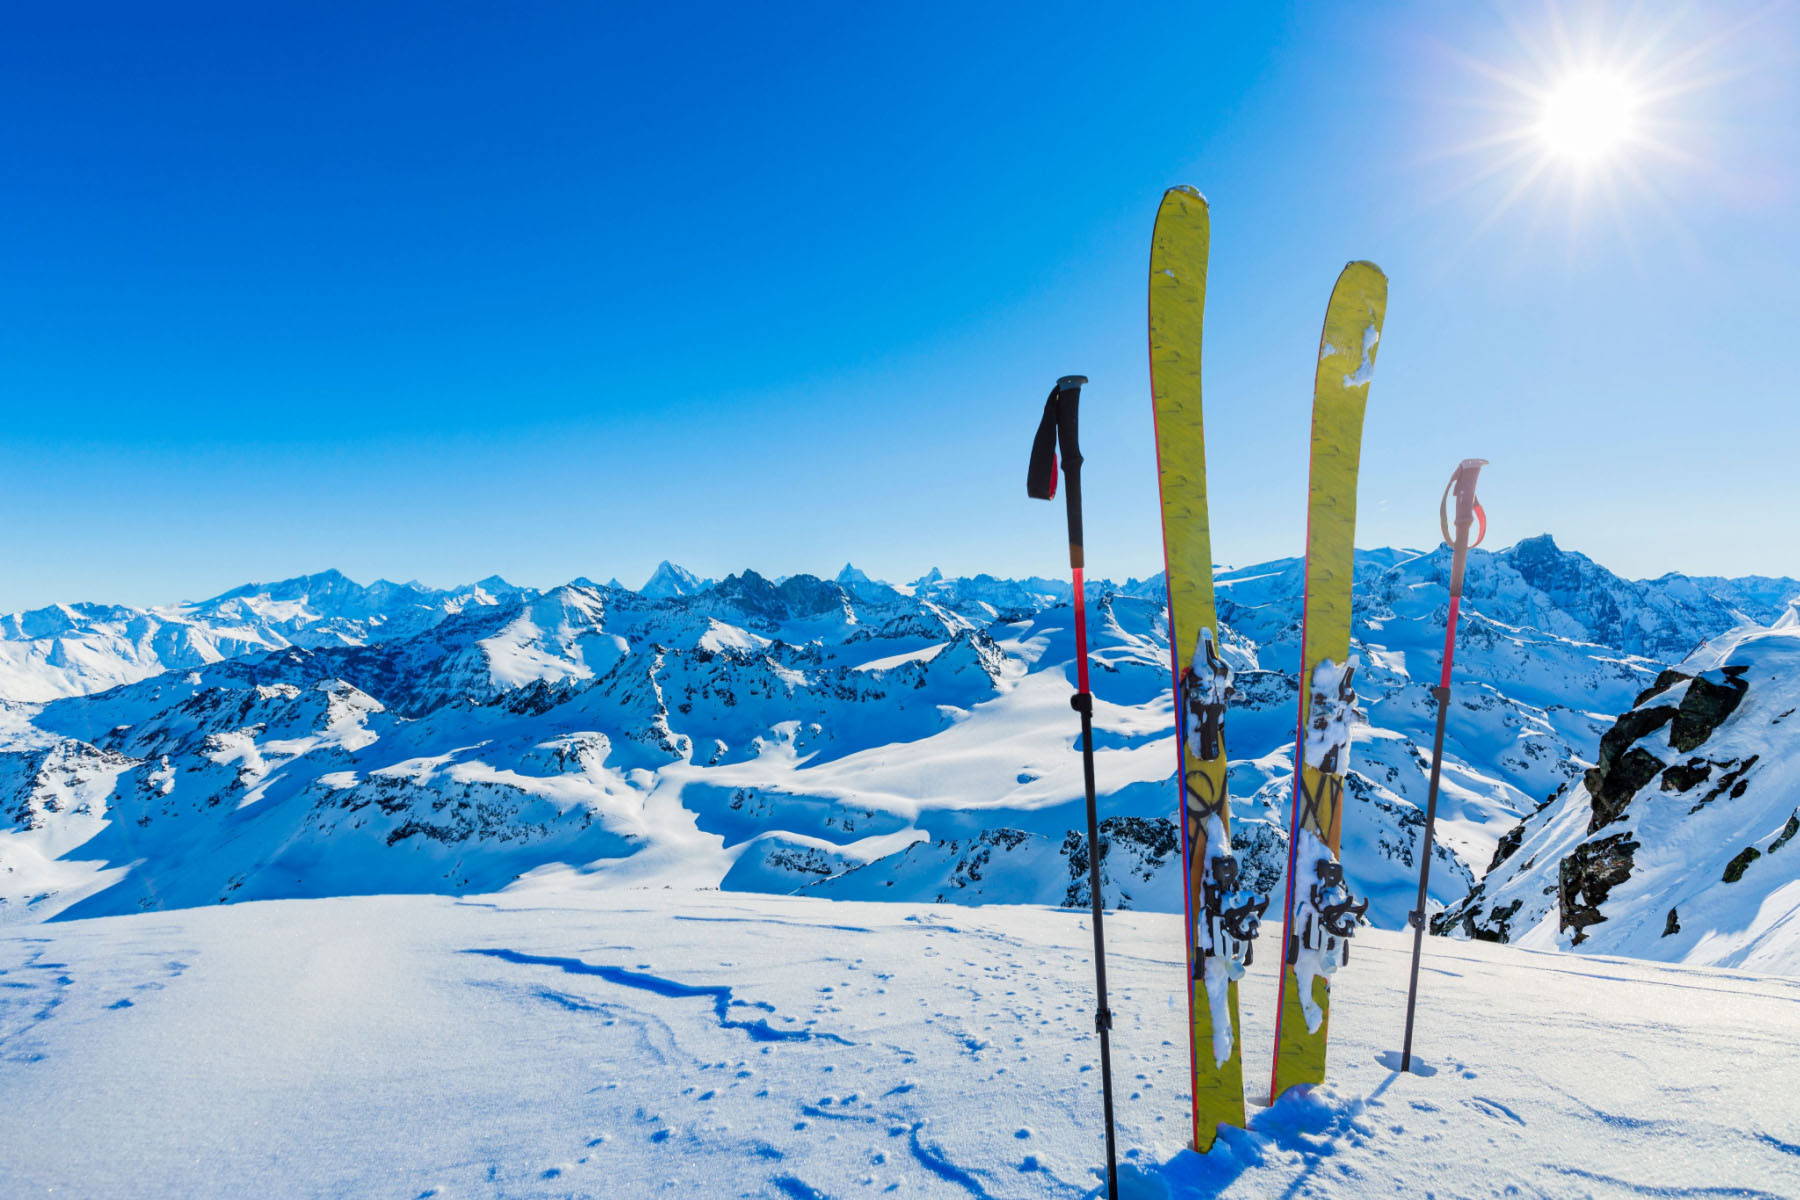 Skialpová výstroj zapíchnutá ve sněhu na pozadí horských štítů